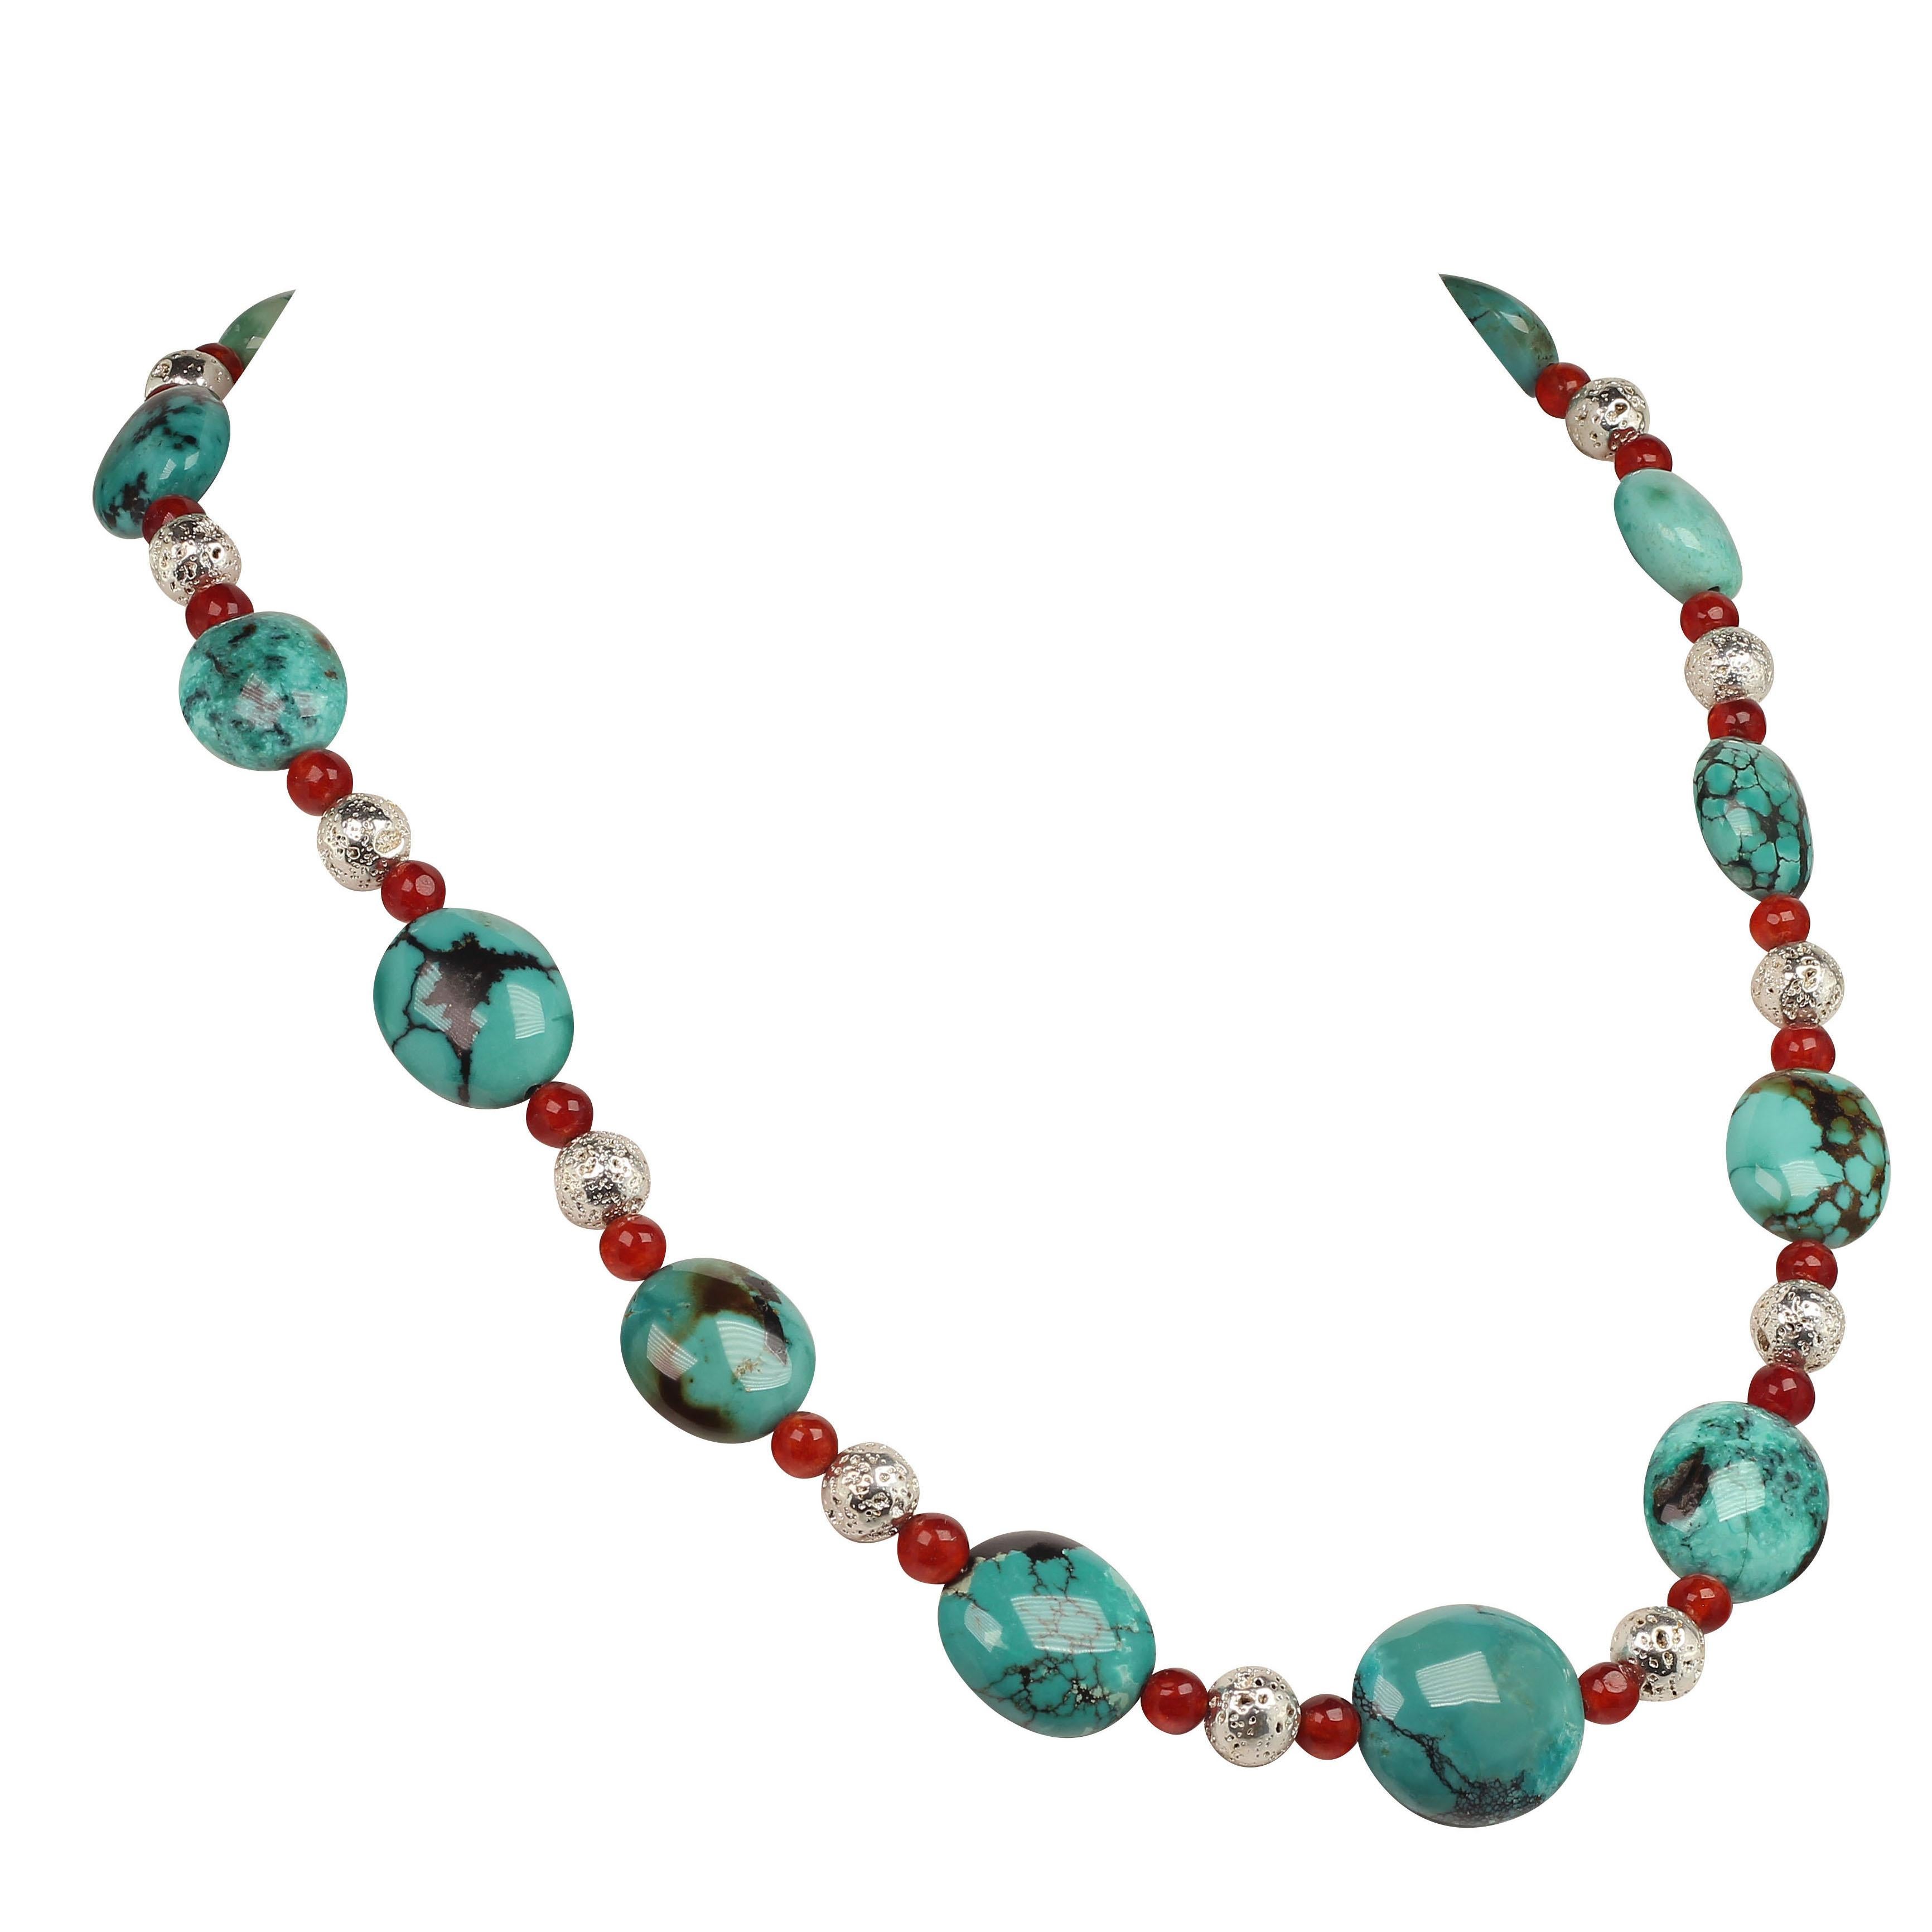 Halskette aus Türkis, Karneol und Silber mit Südwest-Einfluss von JD 22 Zoll (Perle)